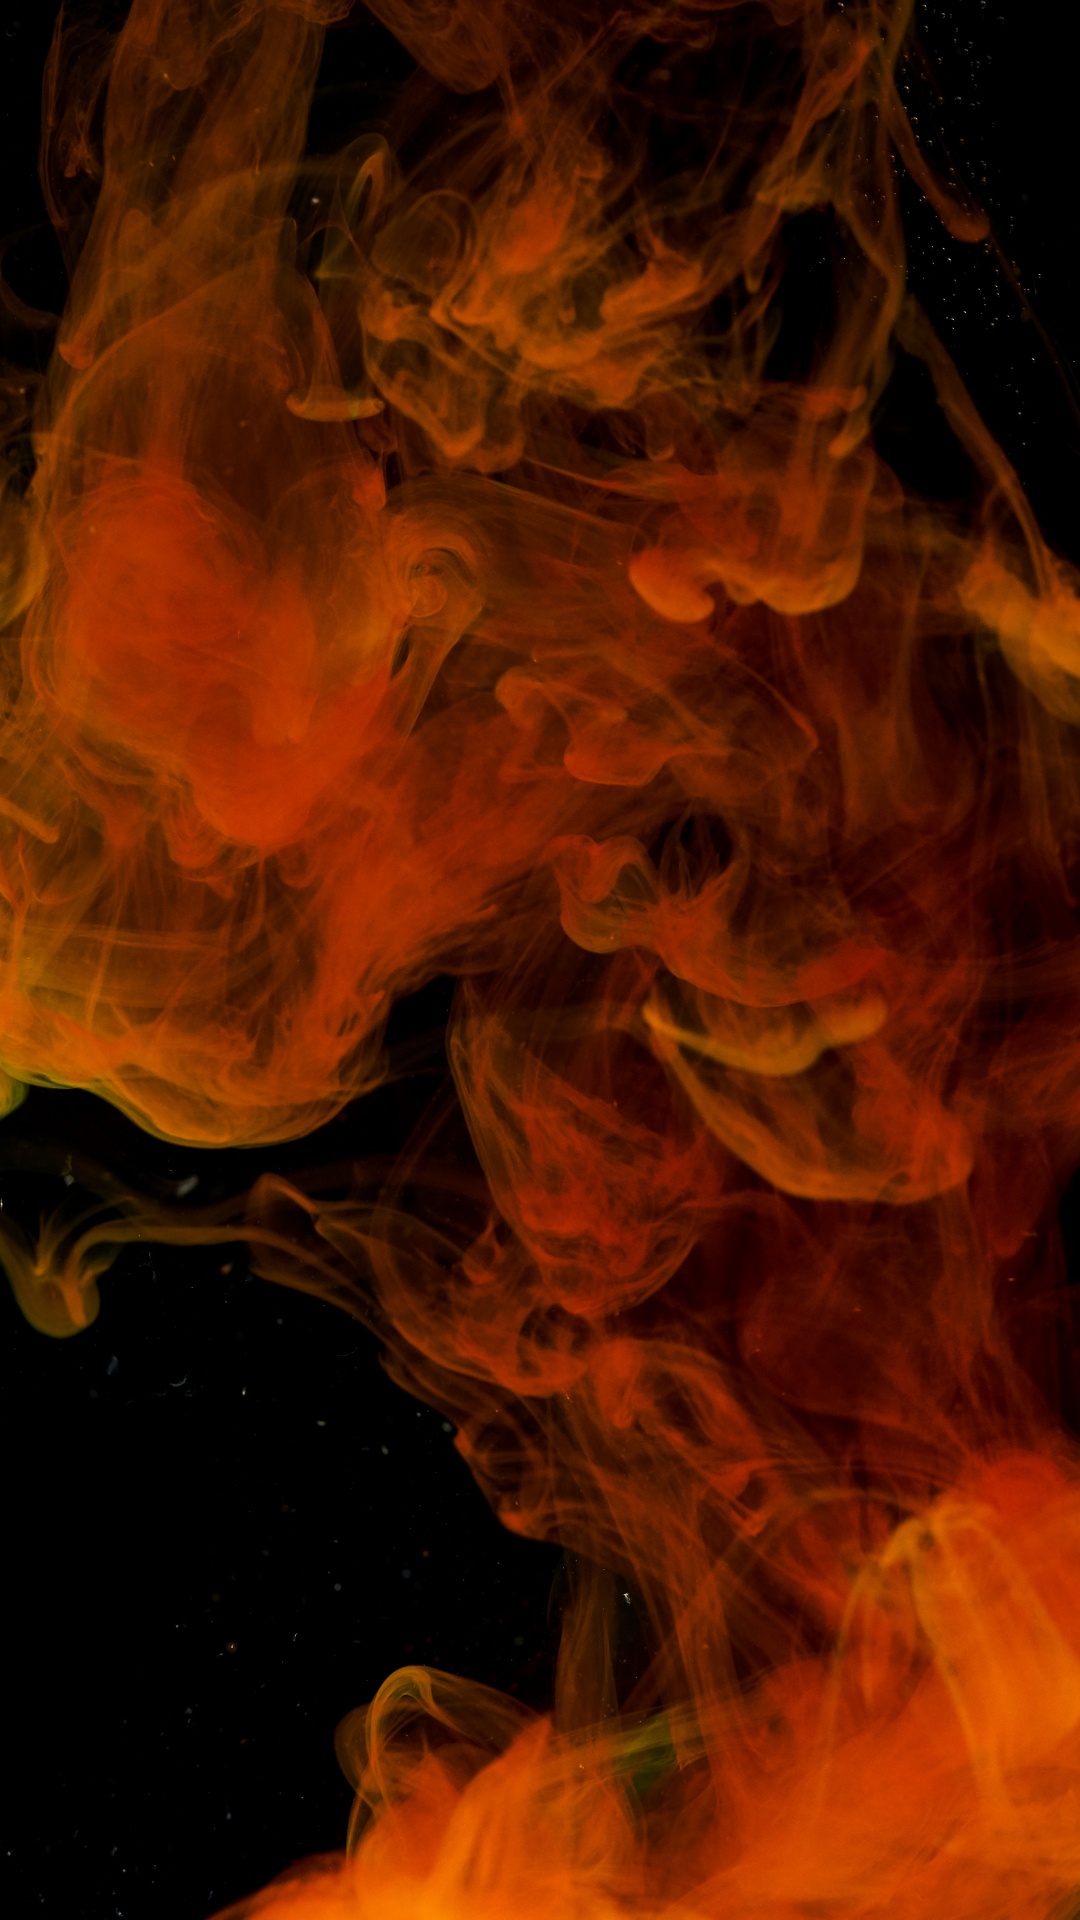 烟雾, 火焰, 热, 橙色, 颜色 壁纸 1080x1920 允许